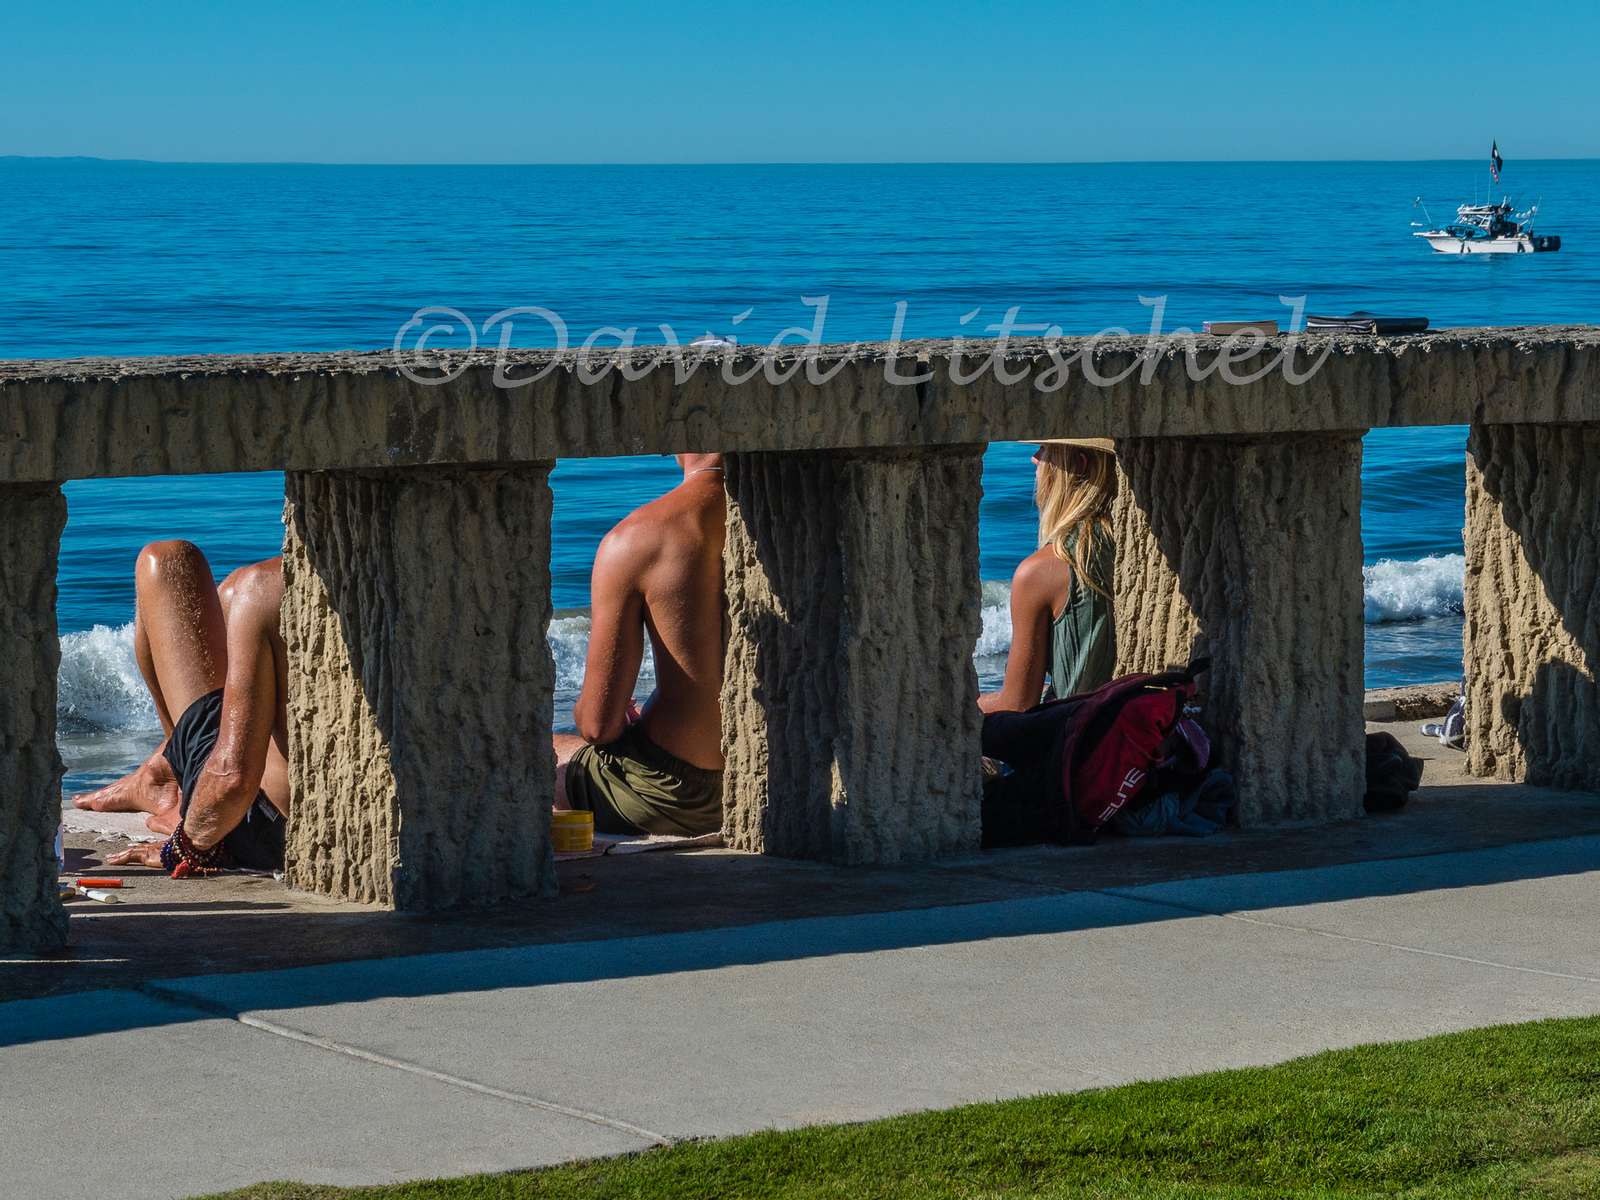 Sun bathing at Channel Drive in Santa Barbara